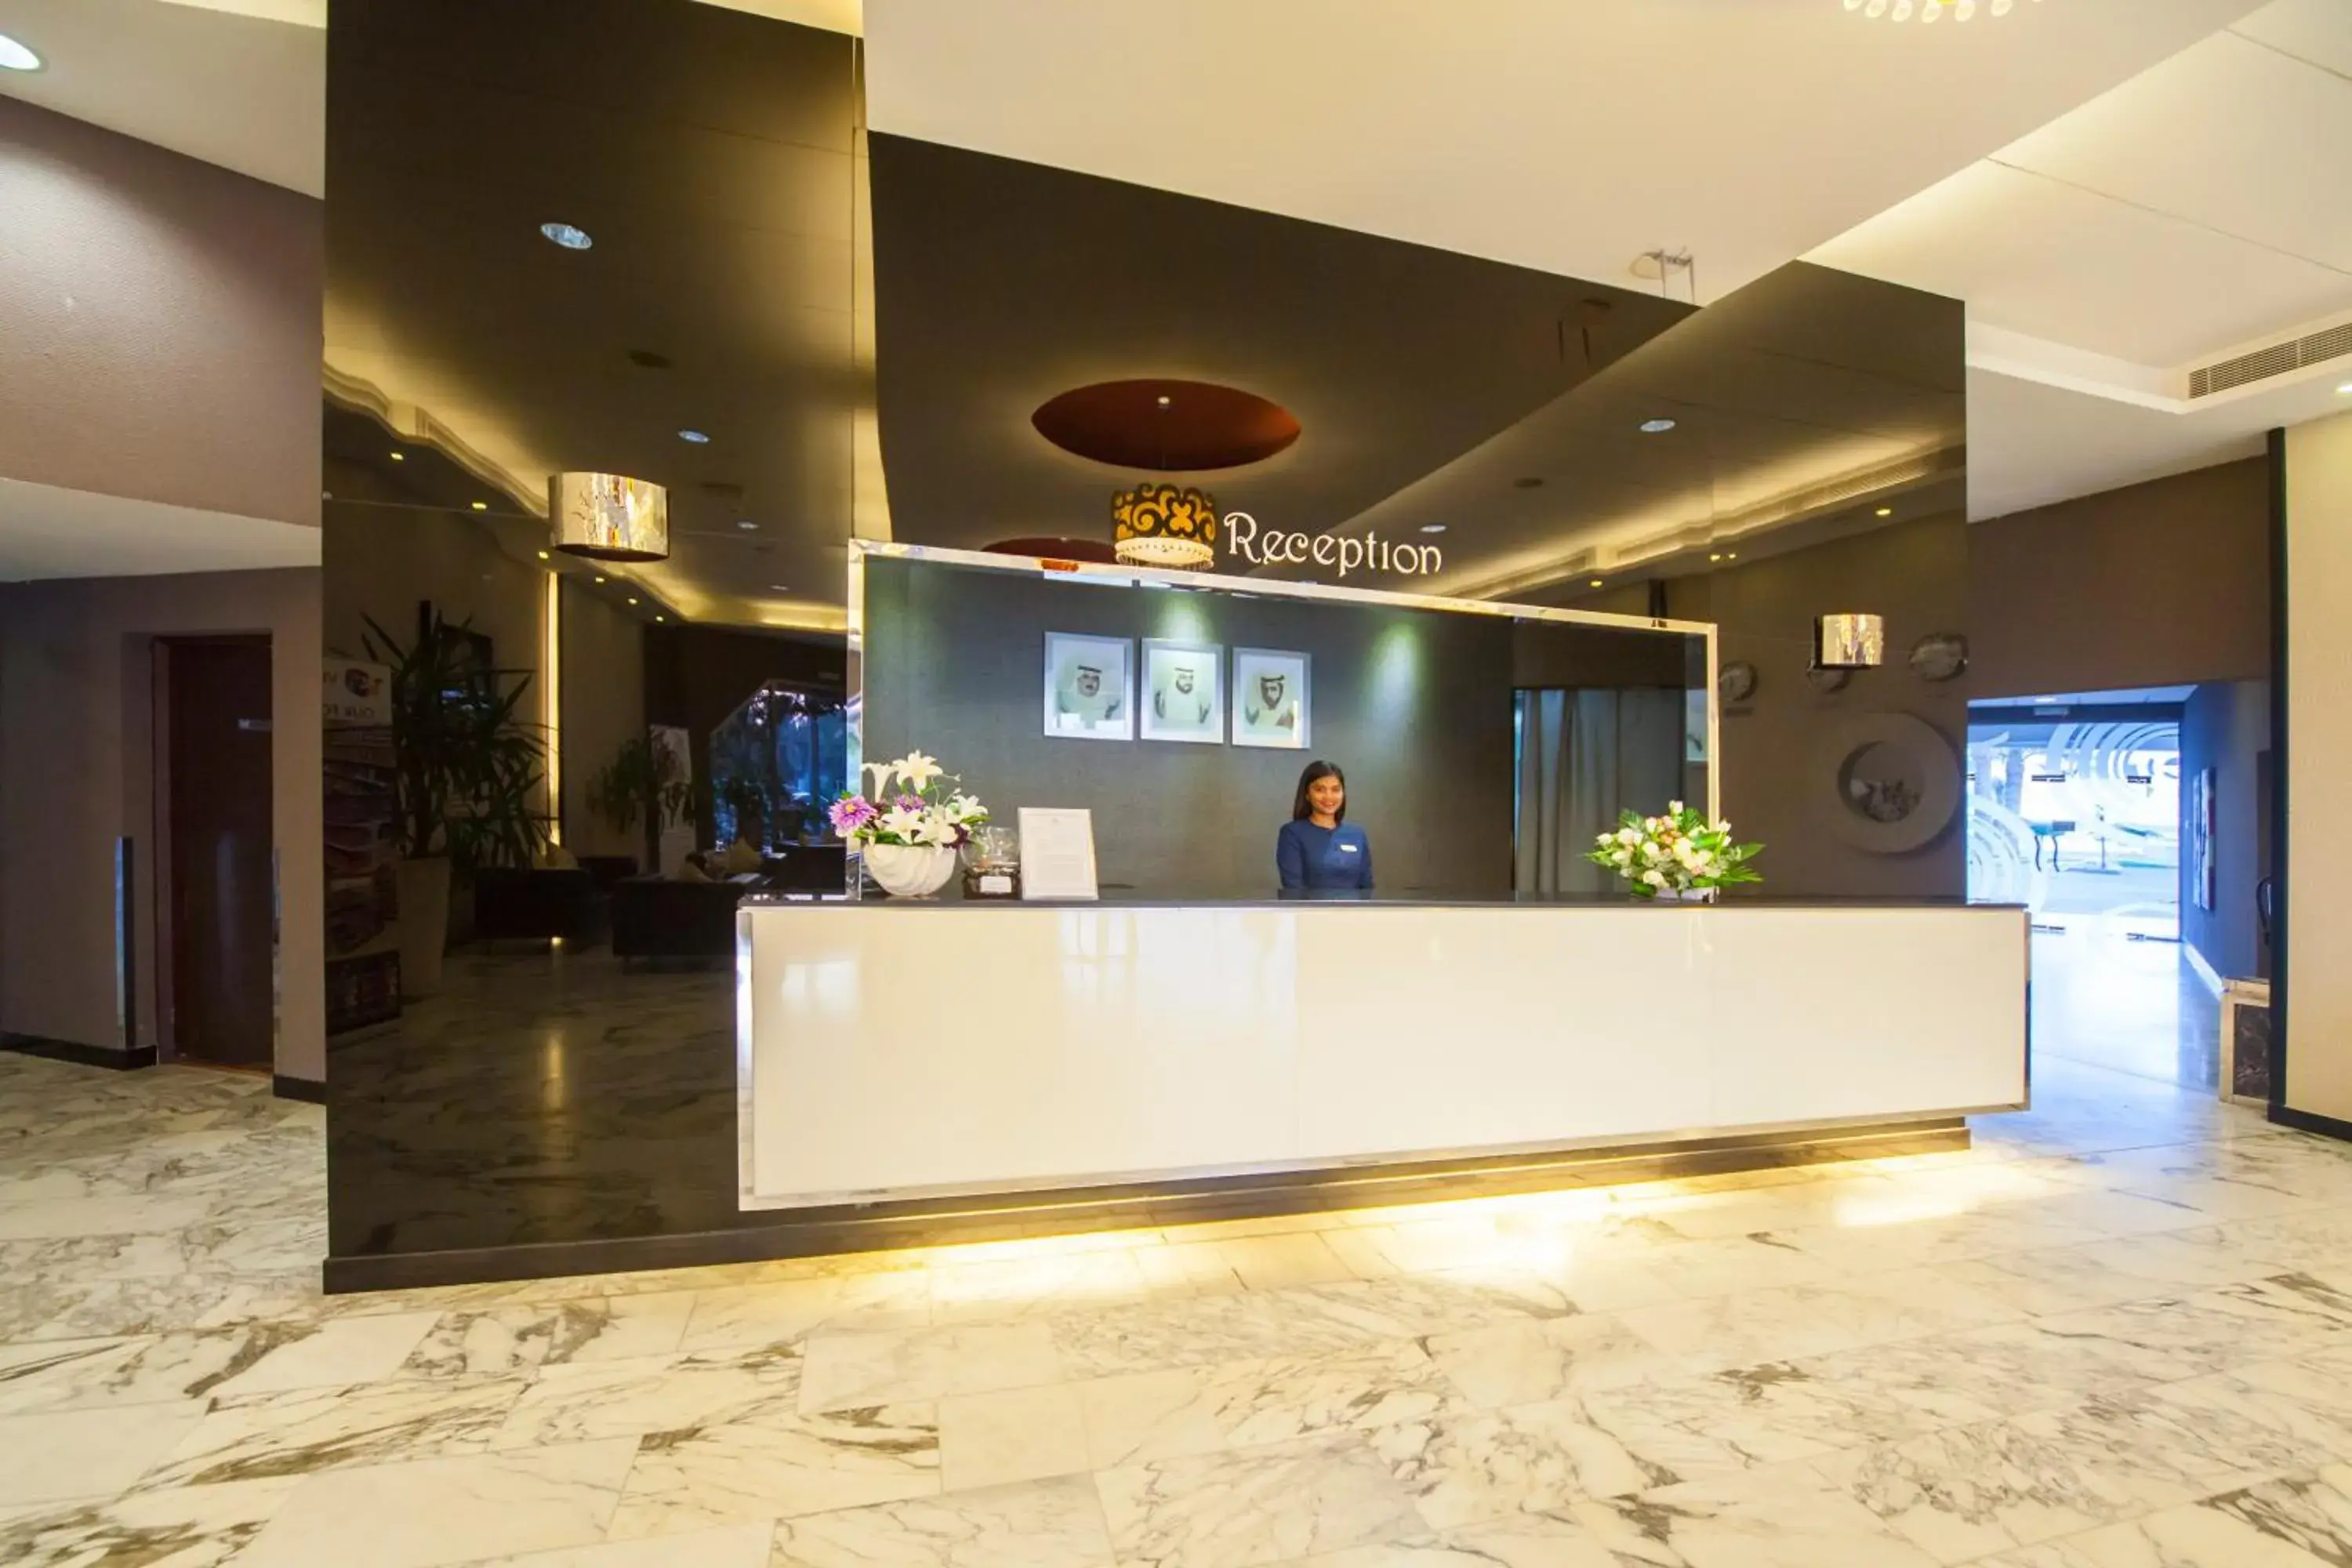 Lobby or reception, Lobby/Reception in Pearl Beach Hotel